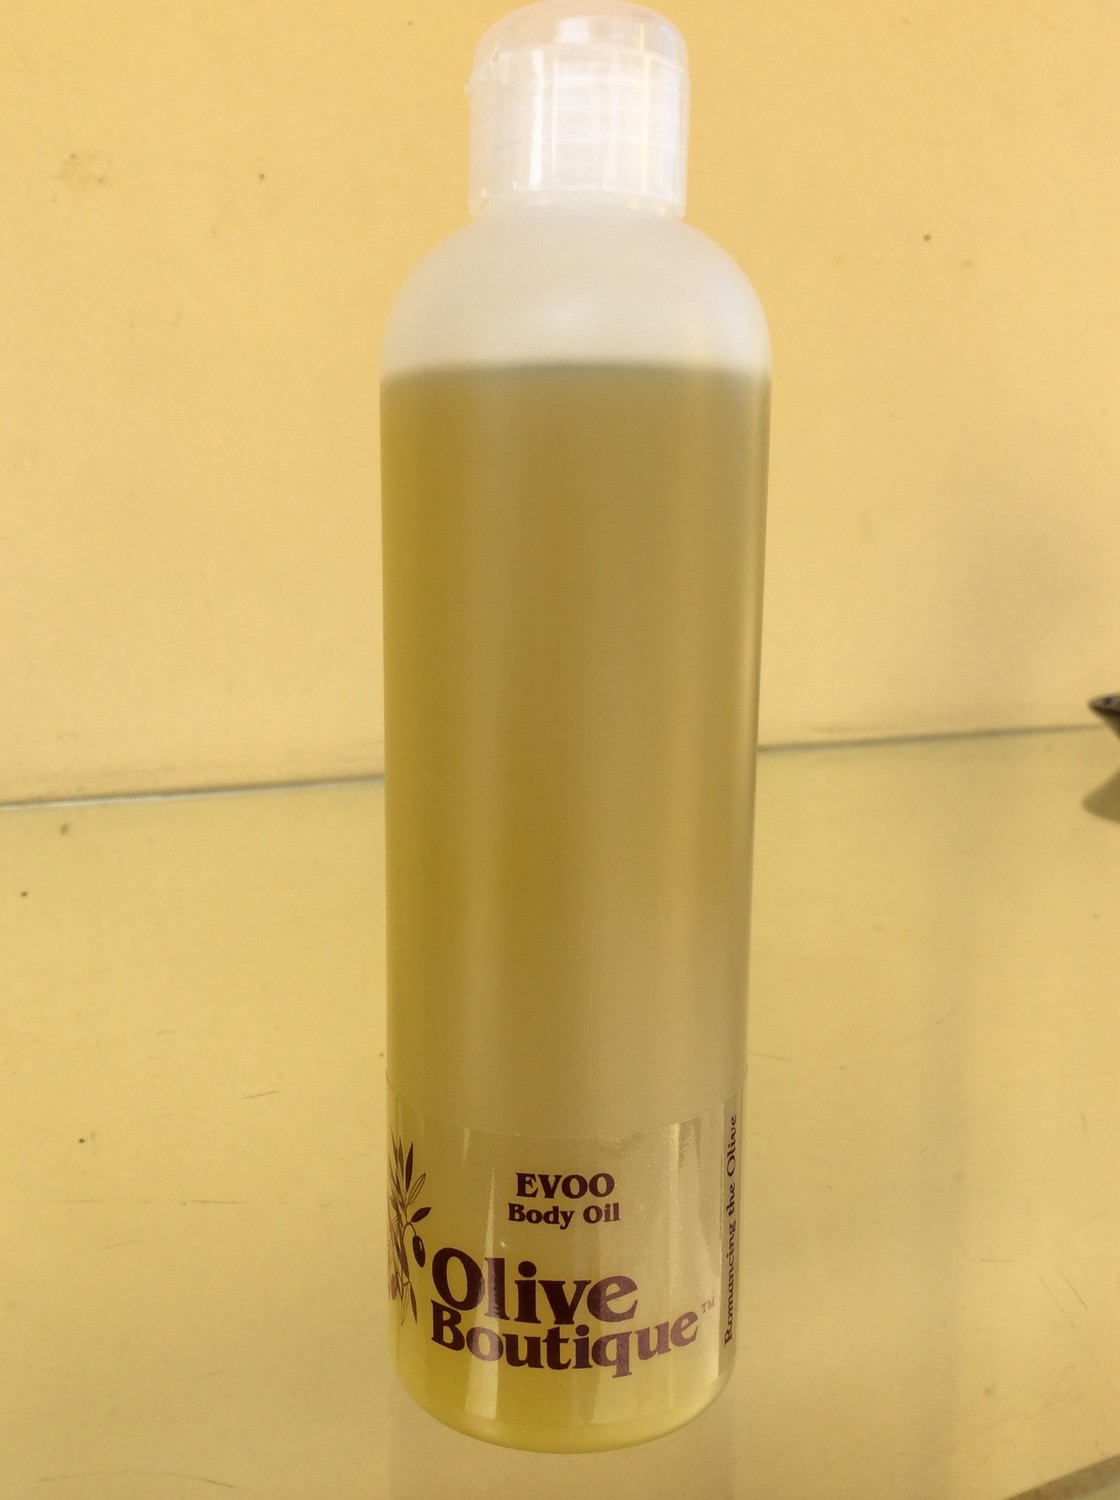 Case of 12 X 250 ml EVOO Body Oil